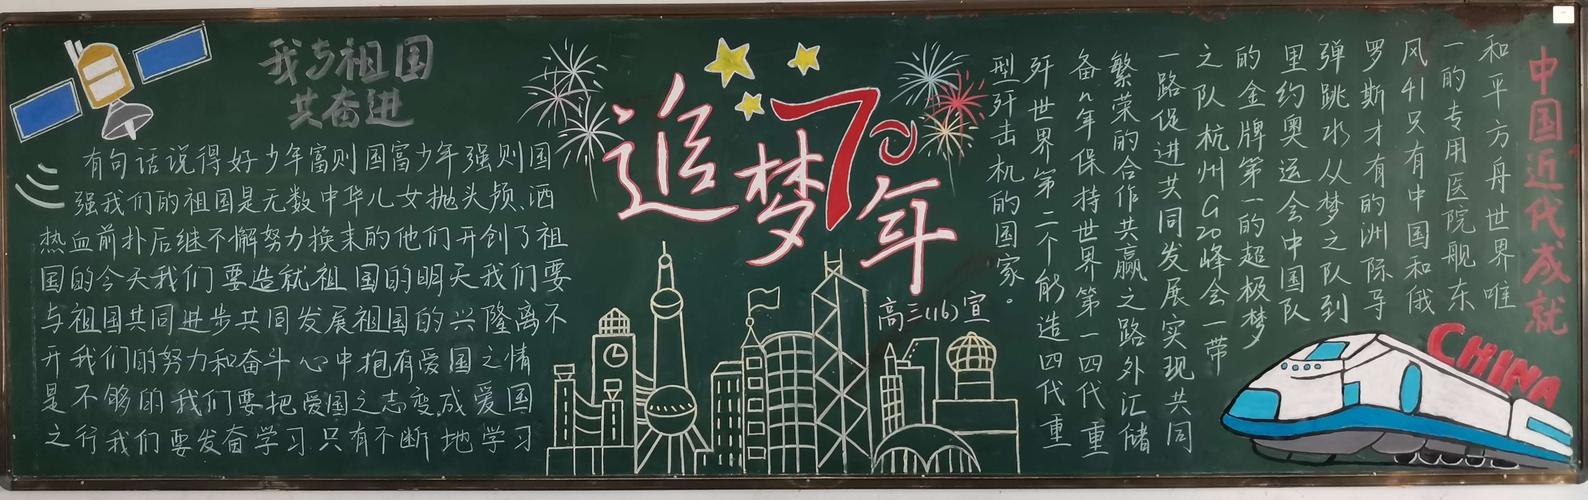 平和一中国庆70周年黑板报评比活动结束